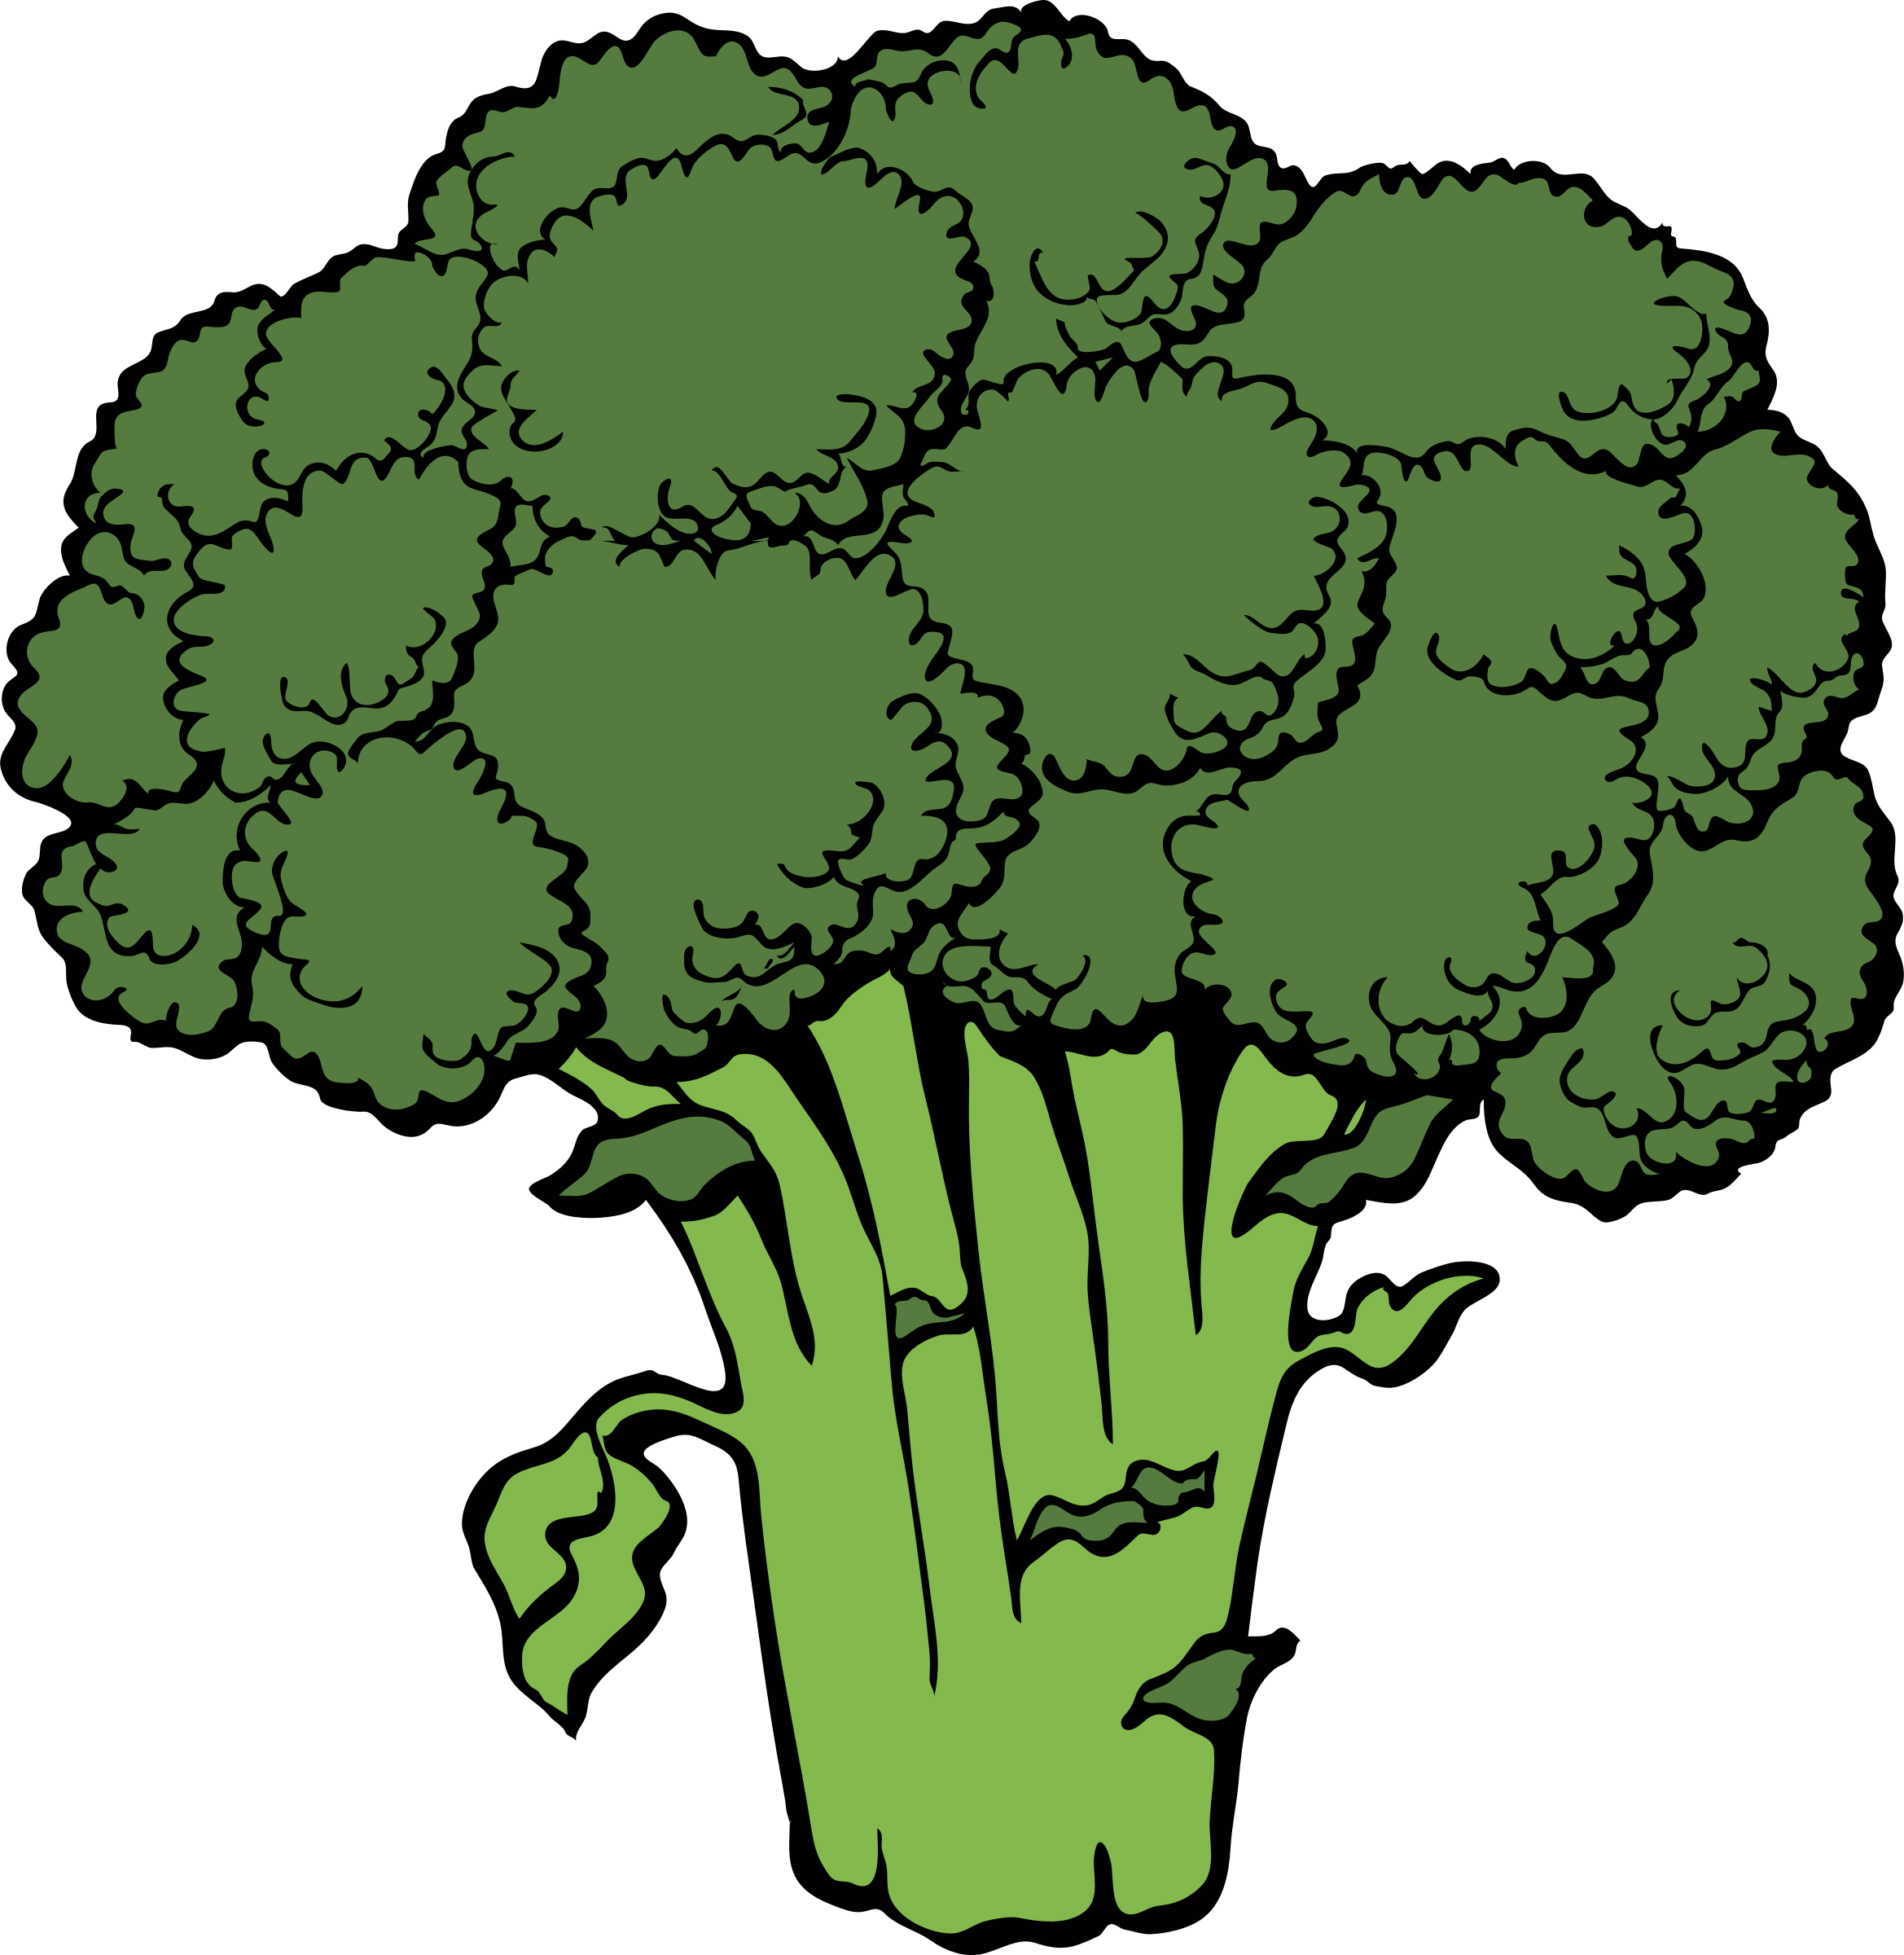 broccoli clipart clip art